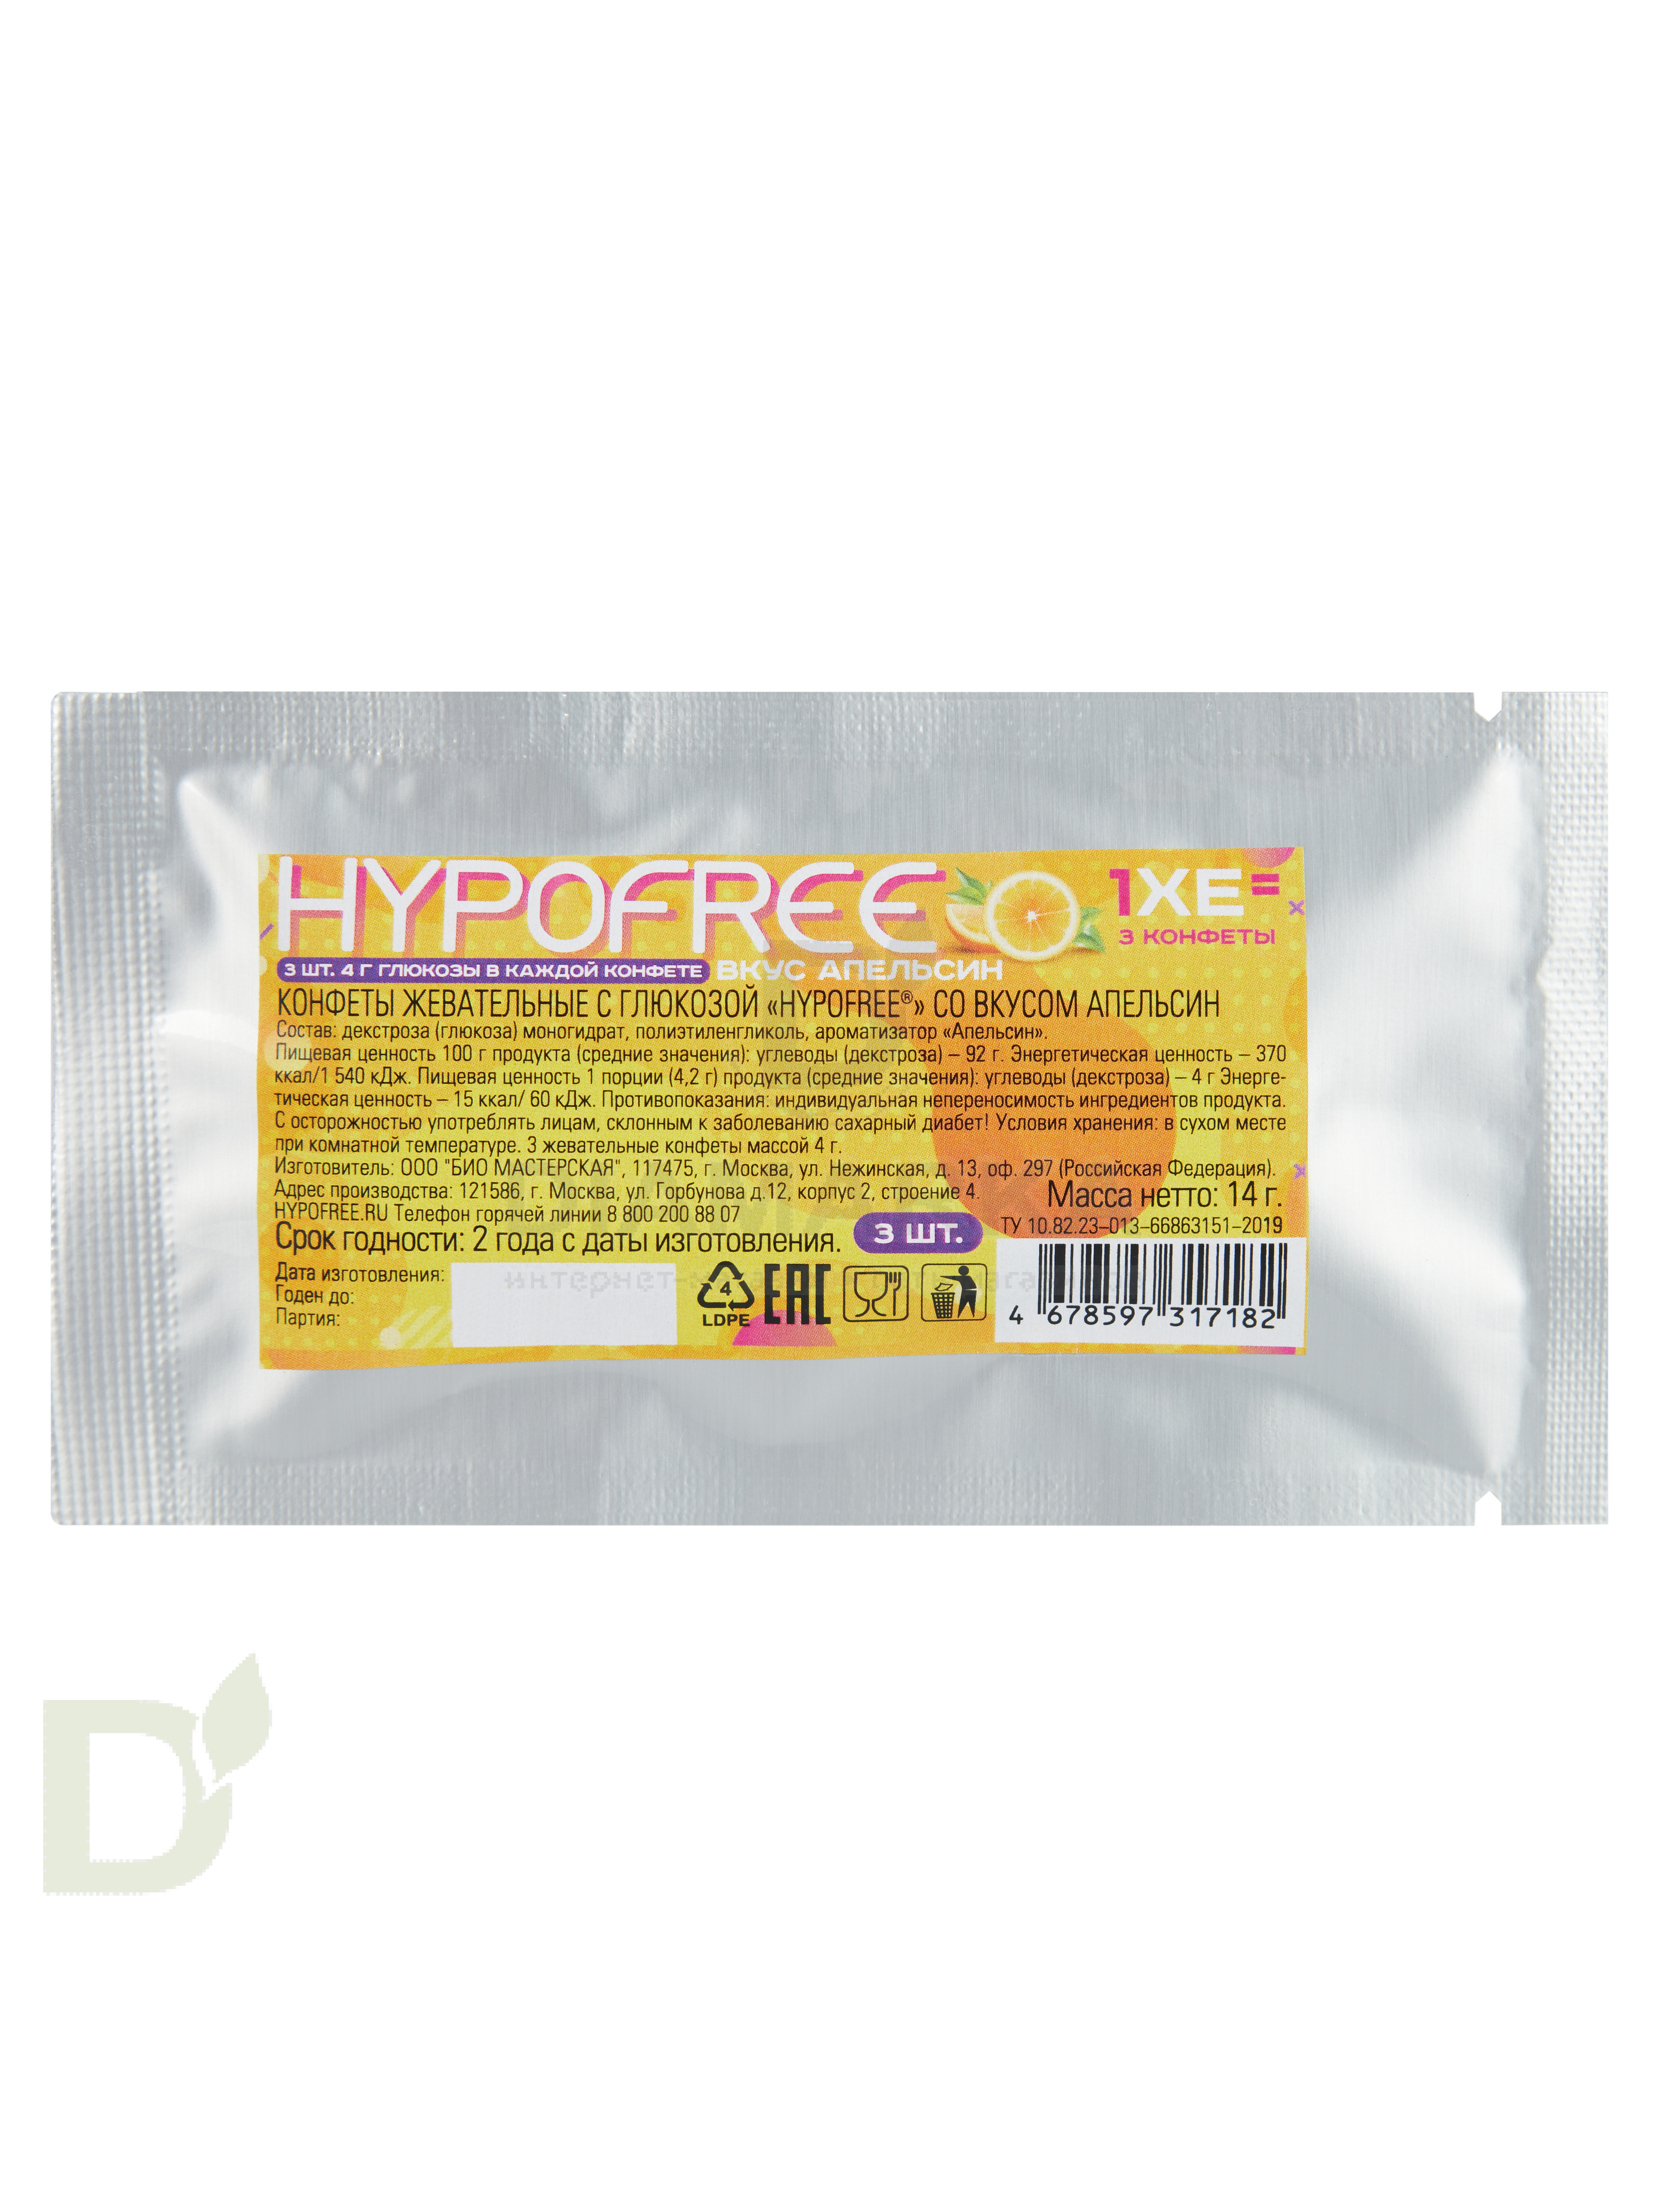 Конфеты таблетированные HYPOFREE 3шт по 4гр Апельсин, саше